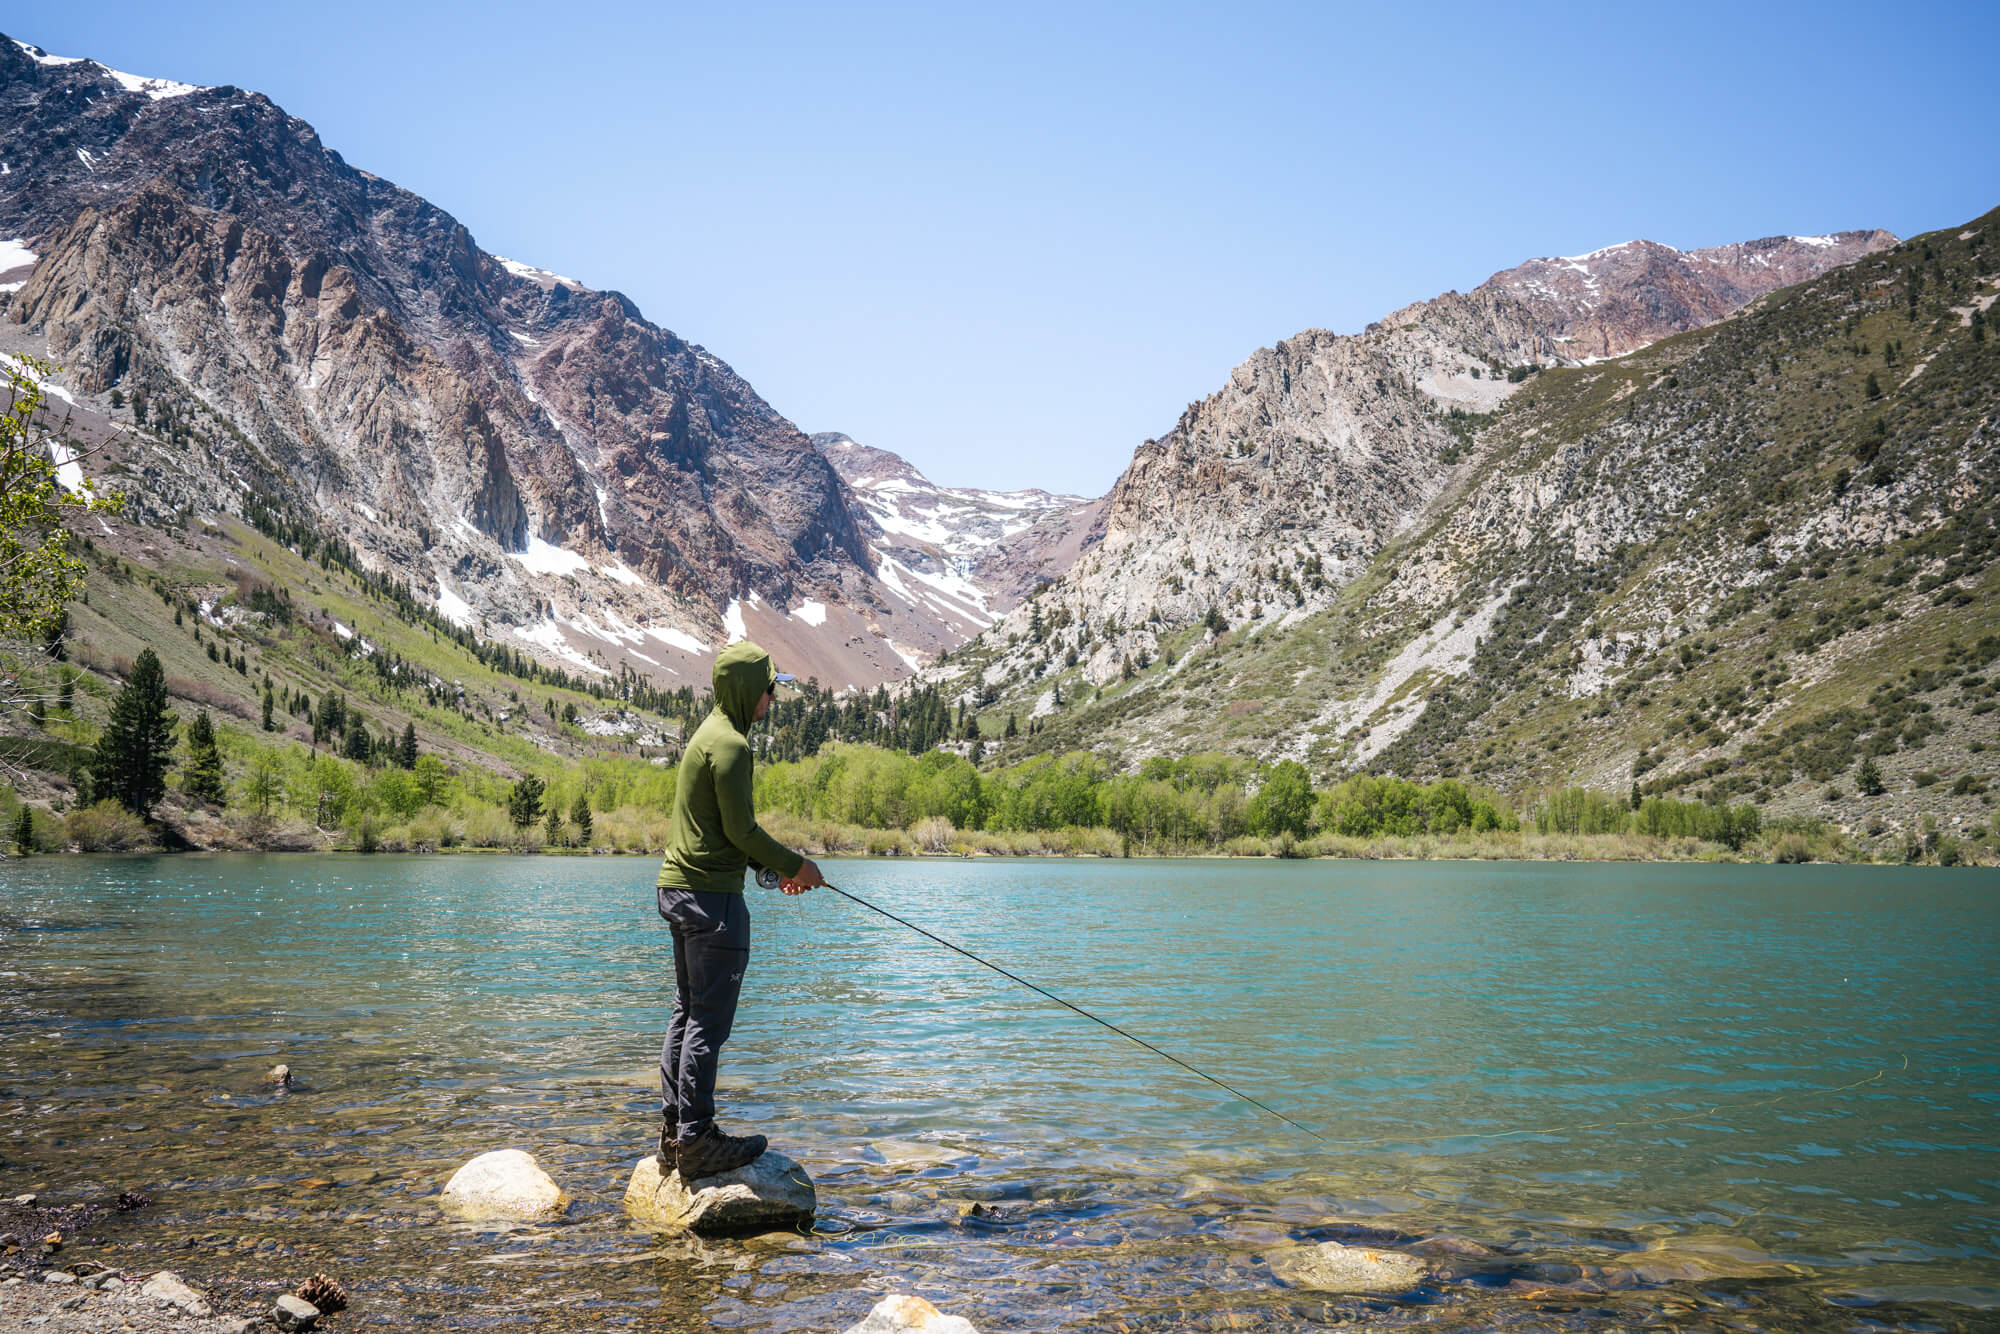 Man fly fishing at Parker Lake